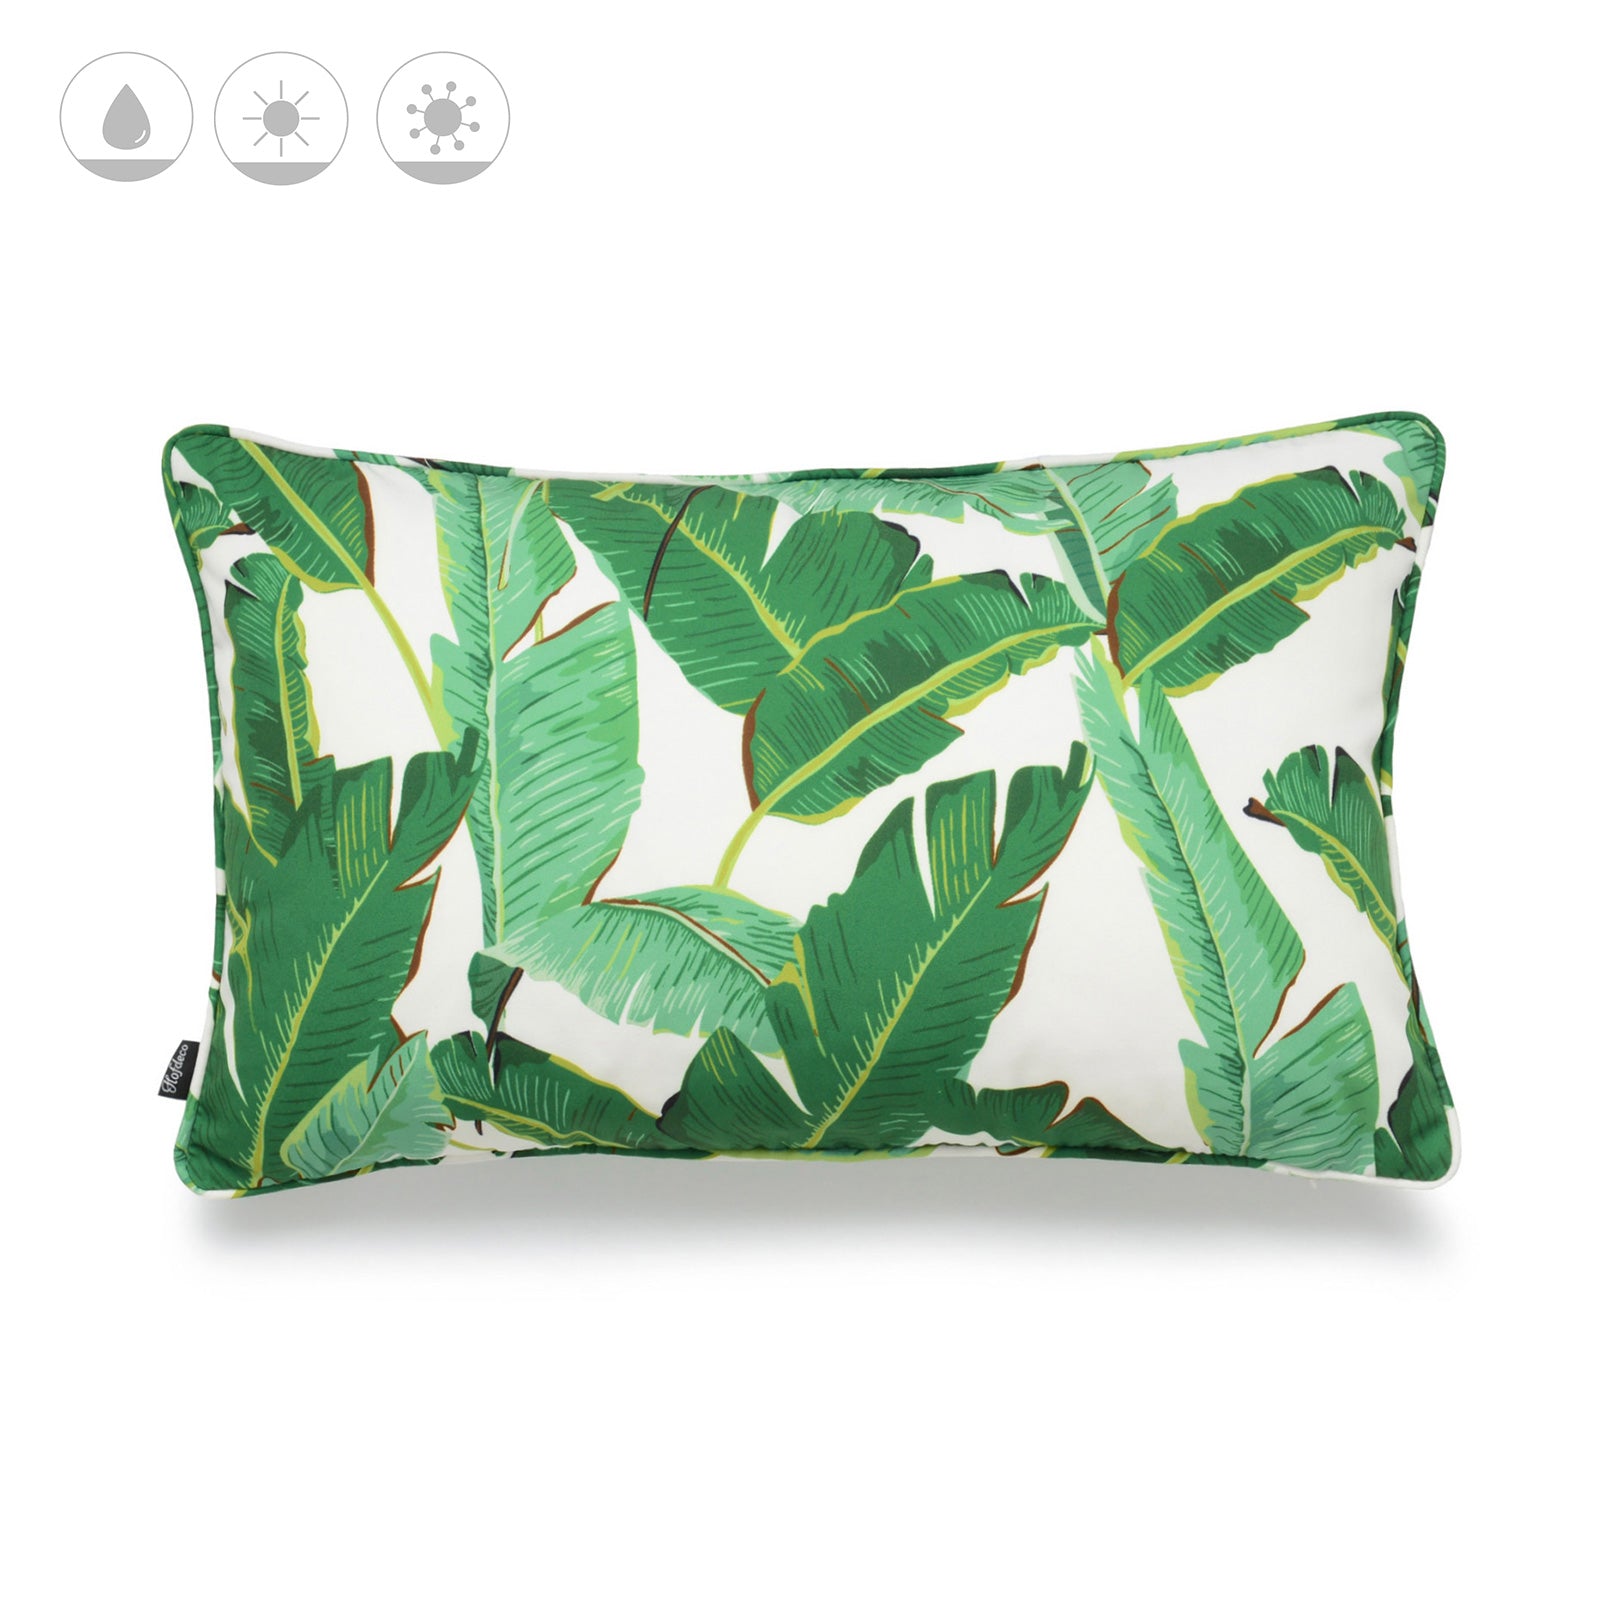 Tropical Banana Leaf Outdoor Lumbar Pillow Cover, 12"x20"